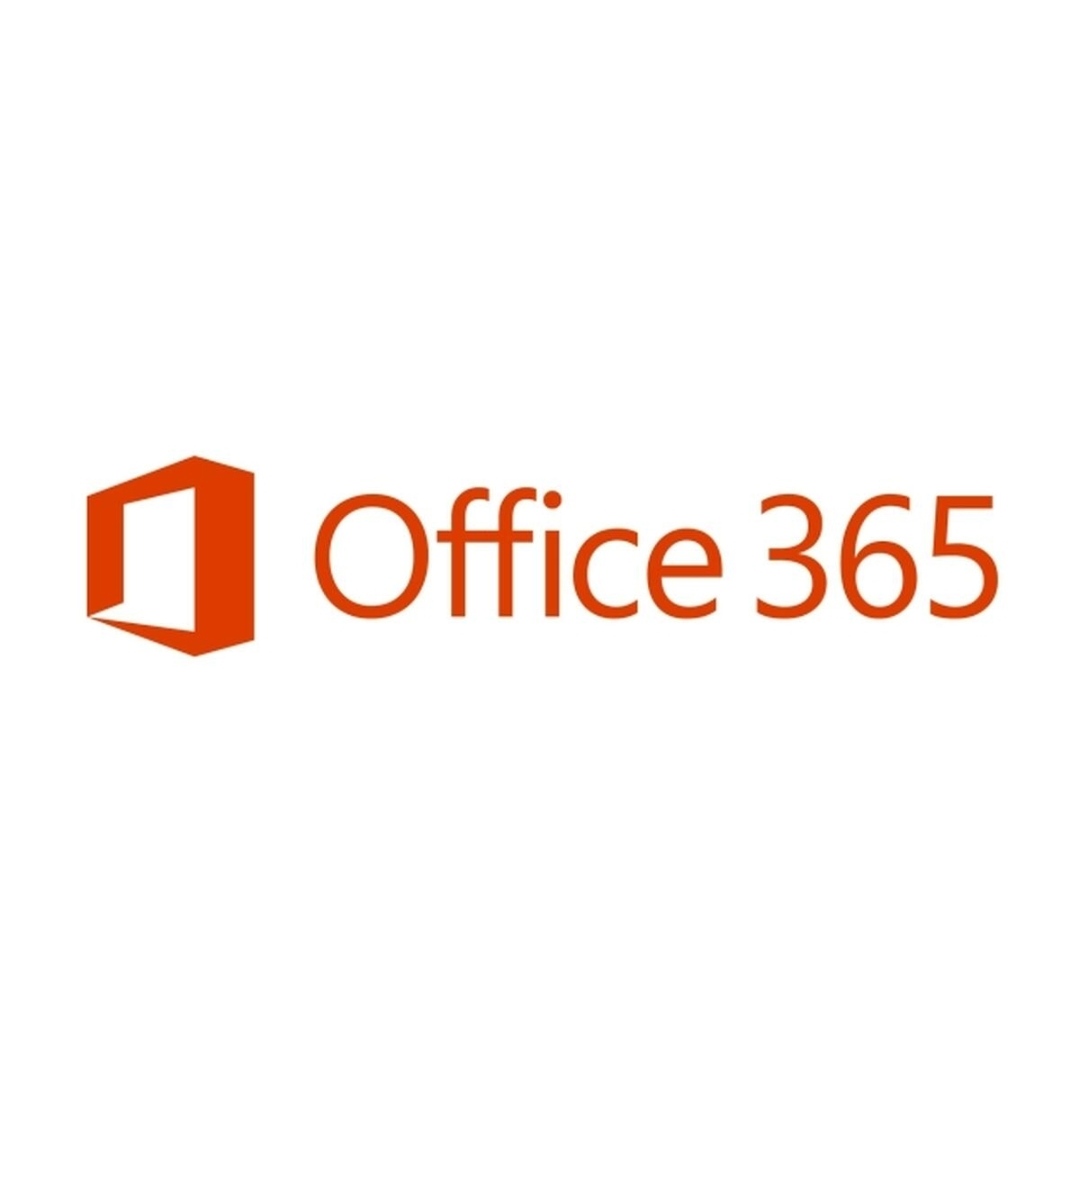 নিয়ে নিন Office 365  এর এক মাসের ট্রায়াল একদম ফ্রী তে এবং পাচ্ছেন OneDrive এর 1TB storage